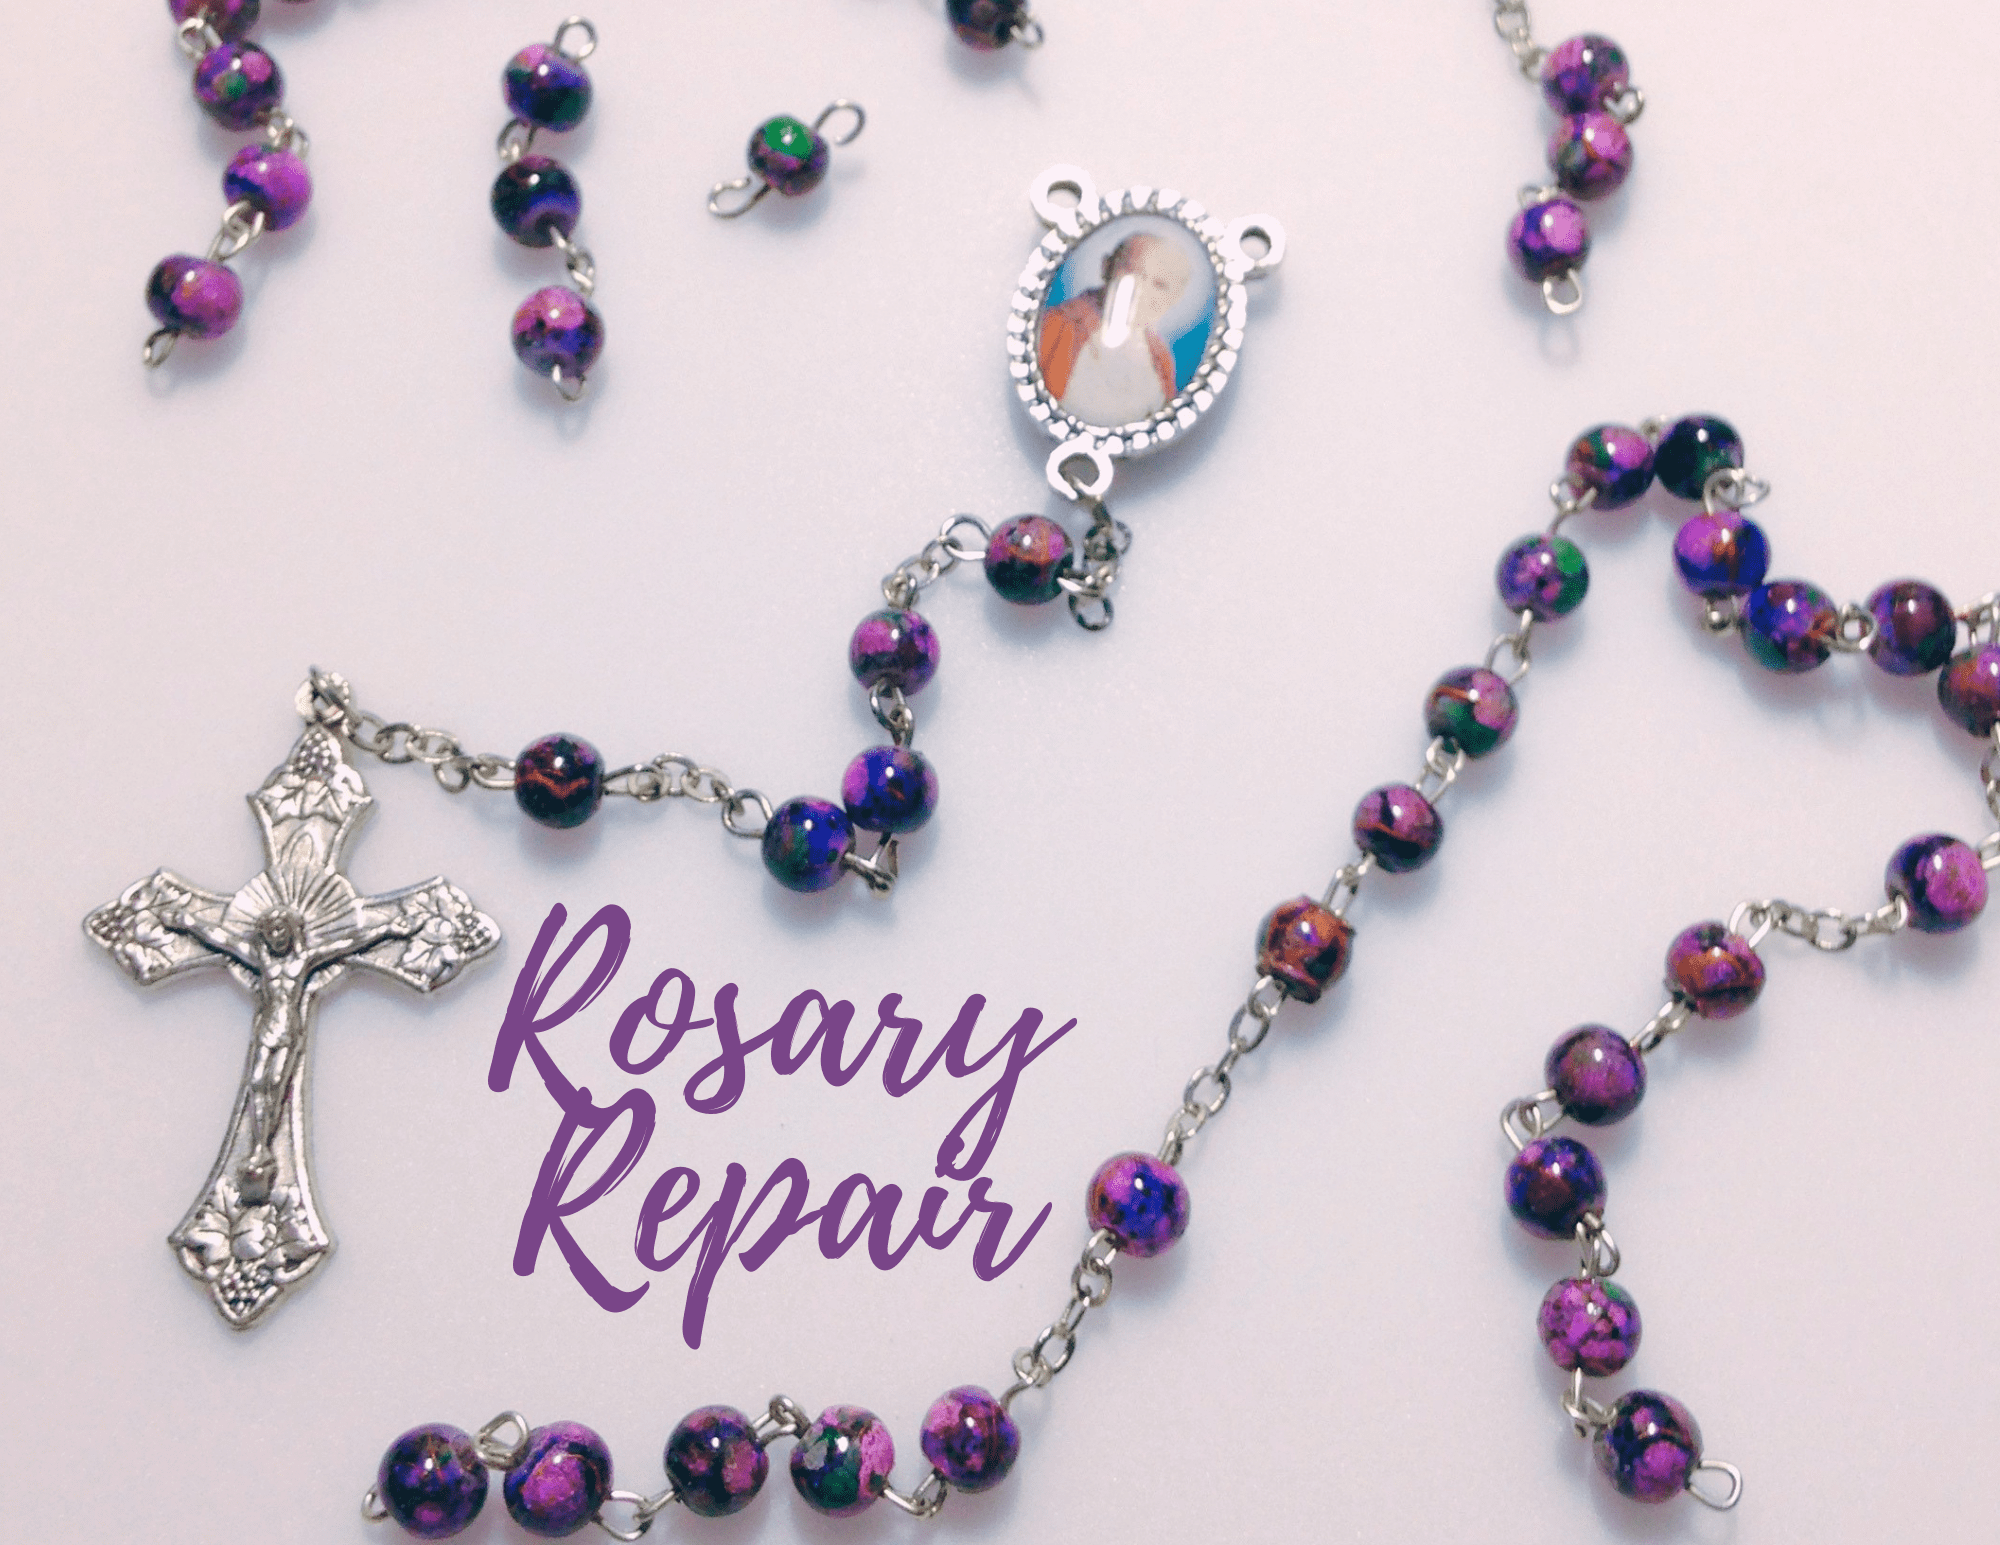 Rosary Repairs